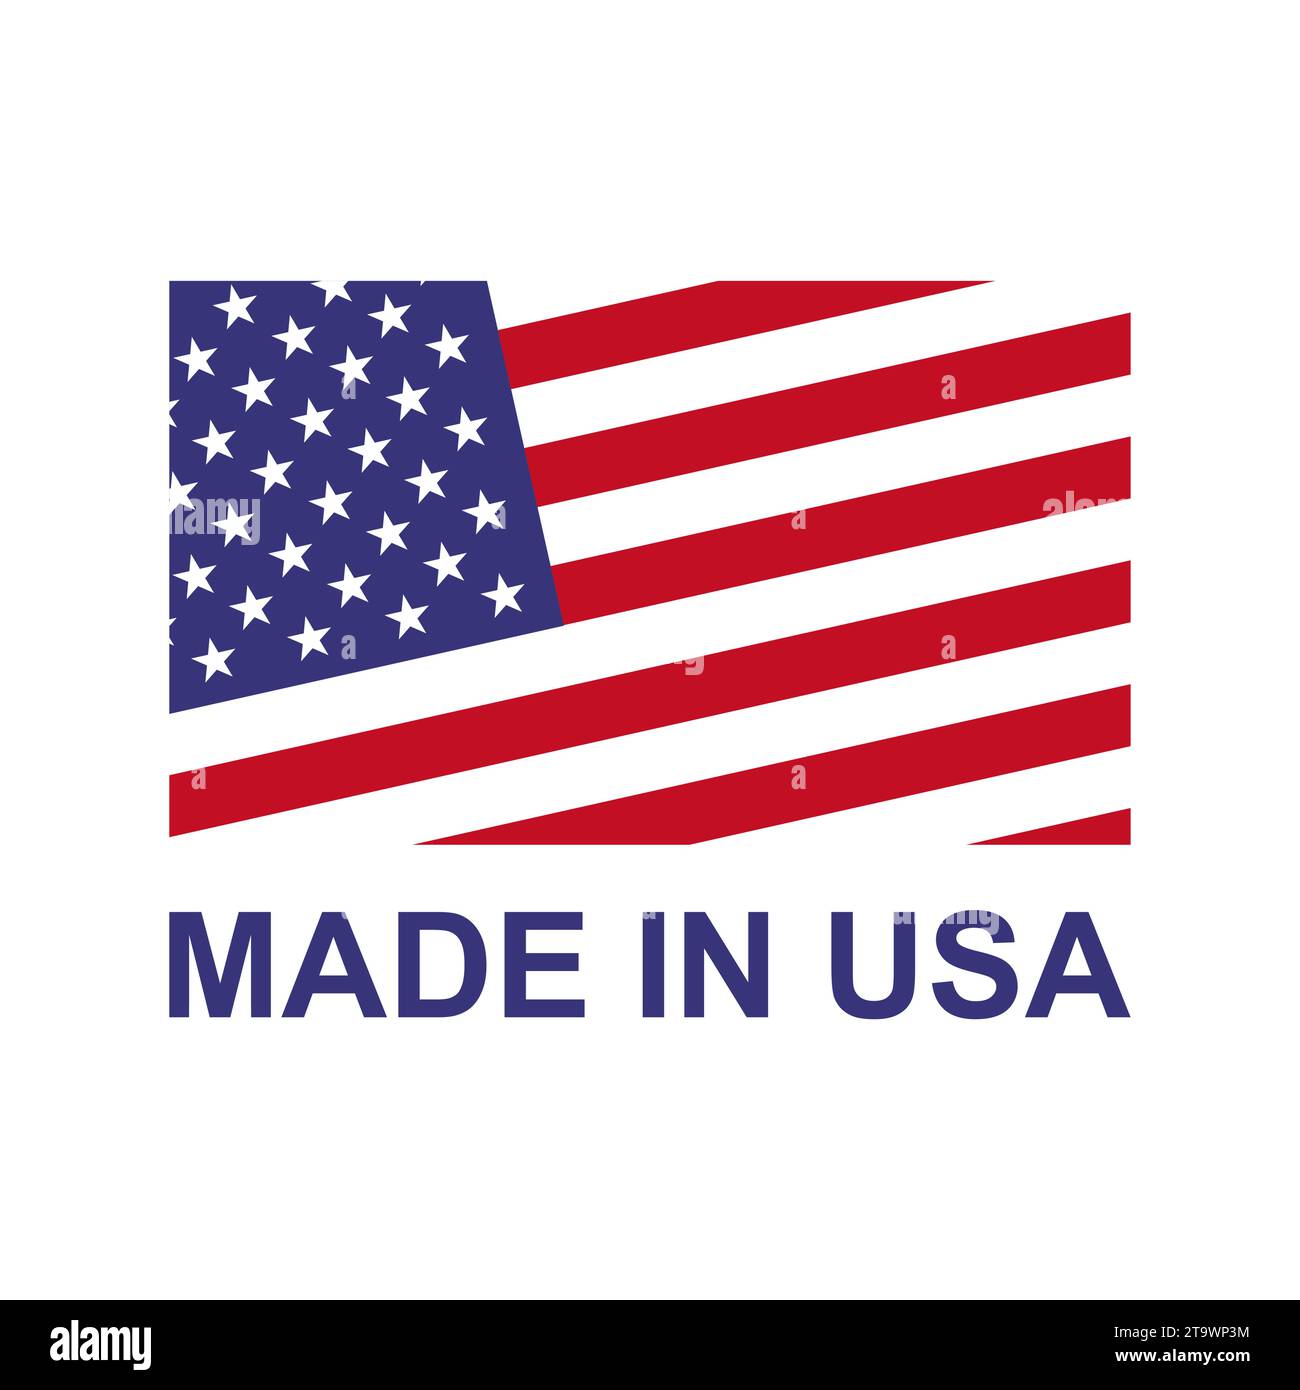 Étiquette Made in USA. Produit fabriqué aux États-Unis d'Amérique icône signes patriotiques. Entreprise de qualité américaine et thème national. Illustration de Vecteur